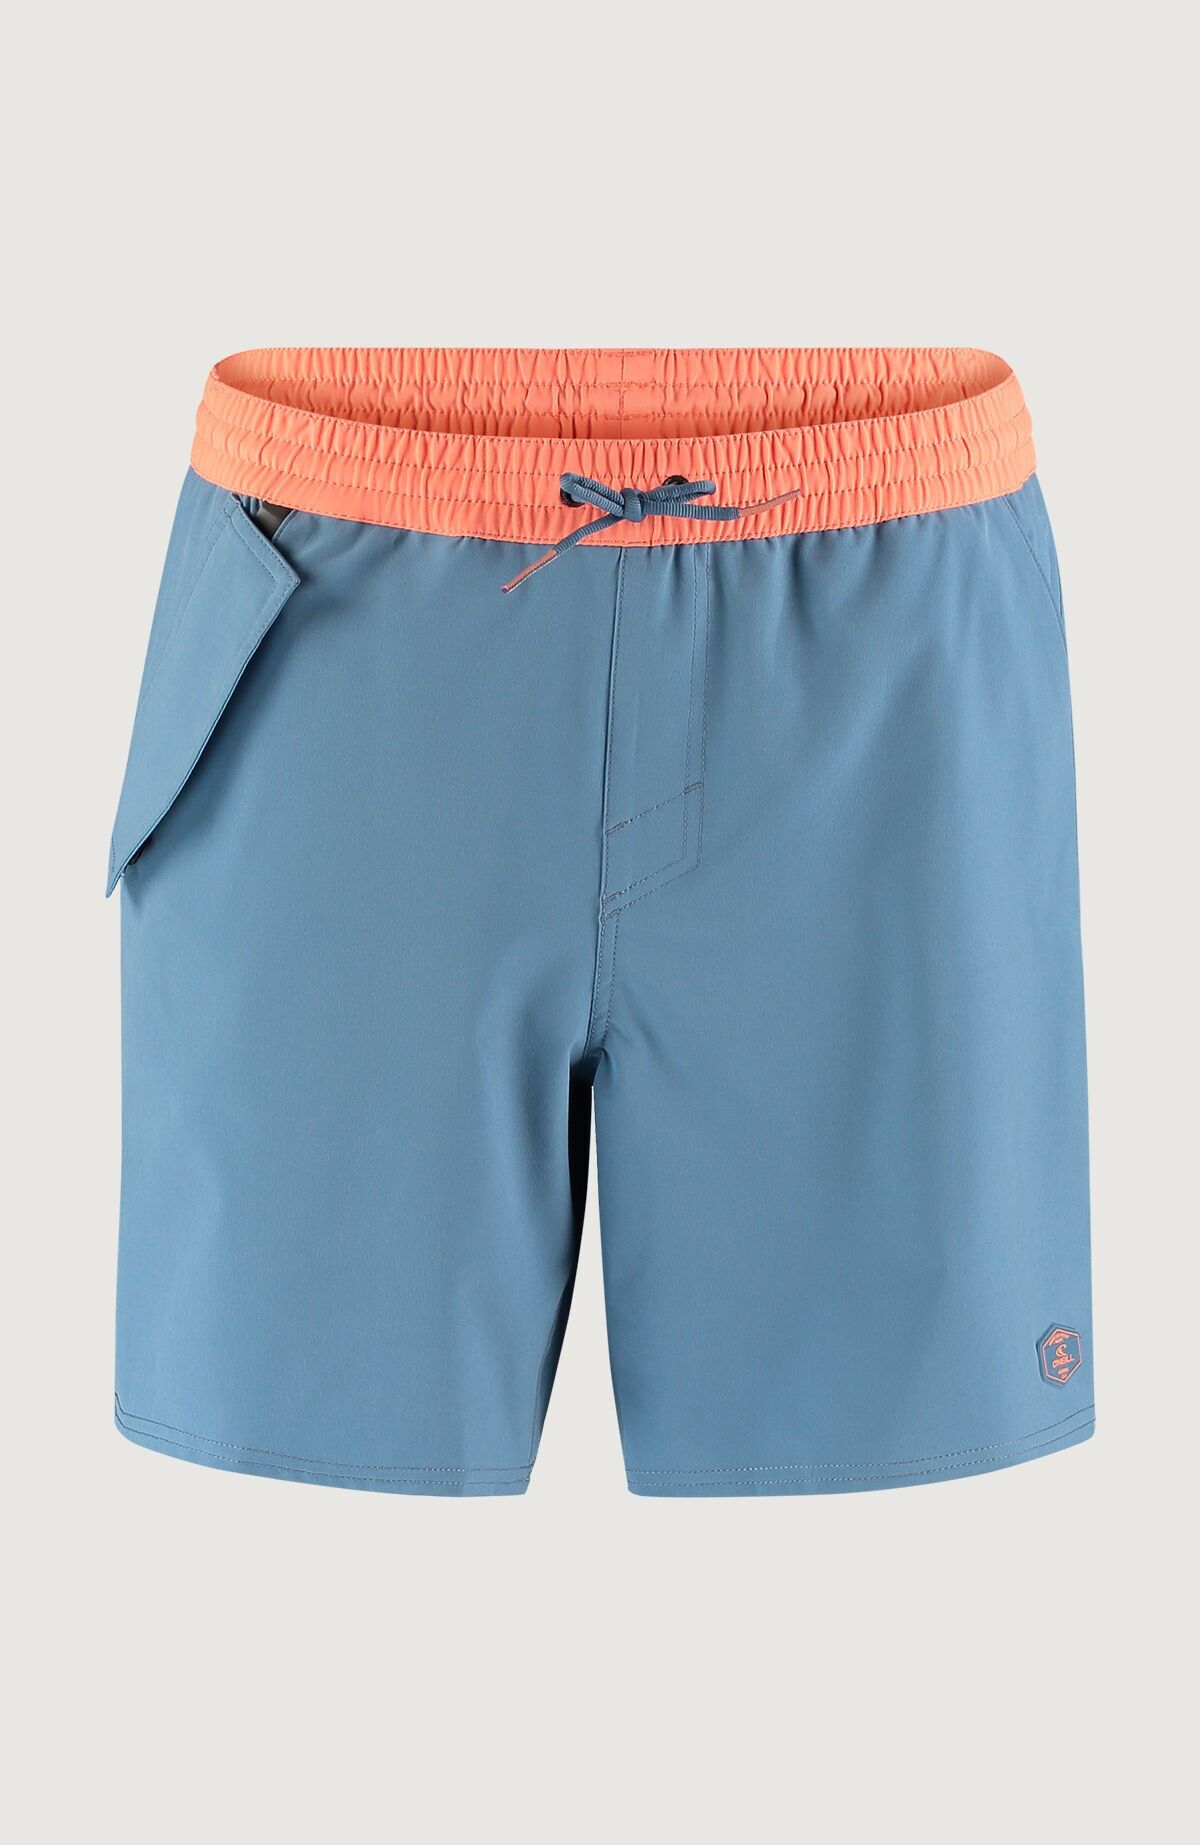 O'Neill Wp-Pocket Shorts - Swim shorts - Men's